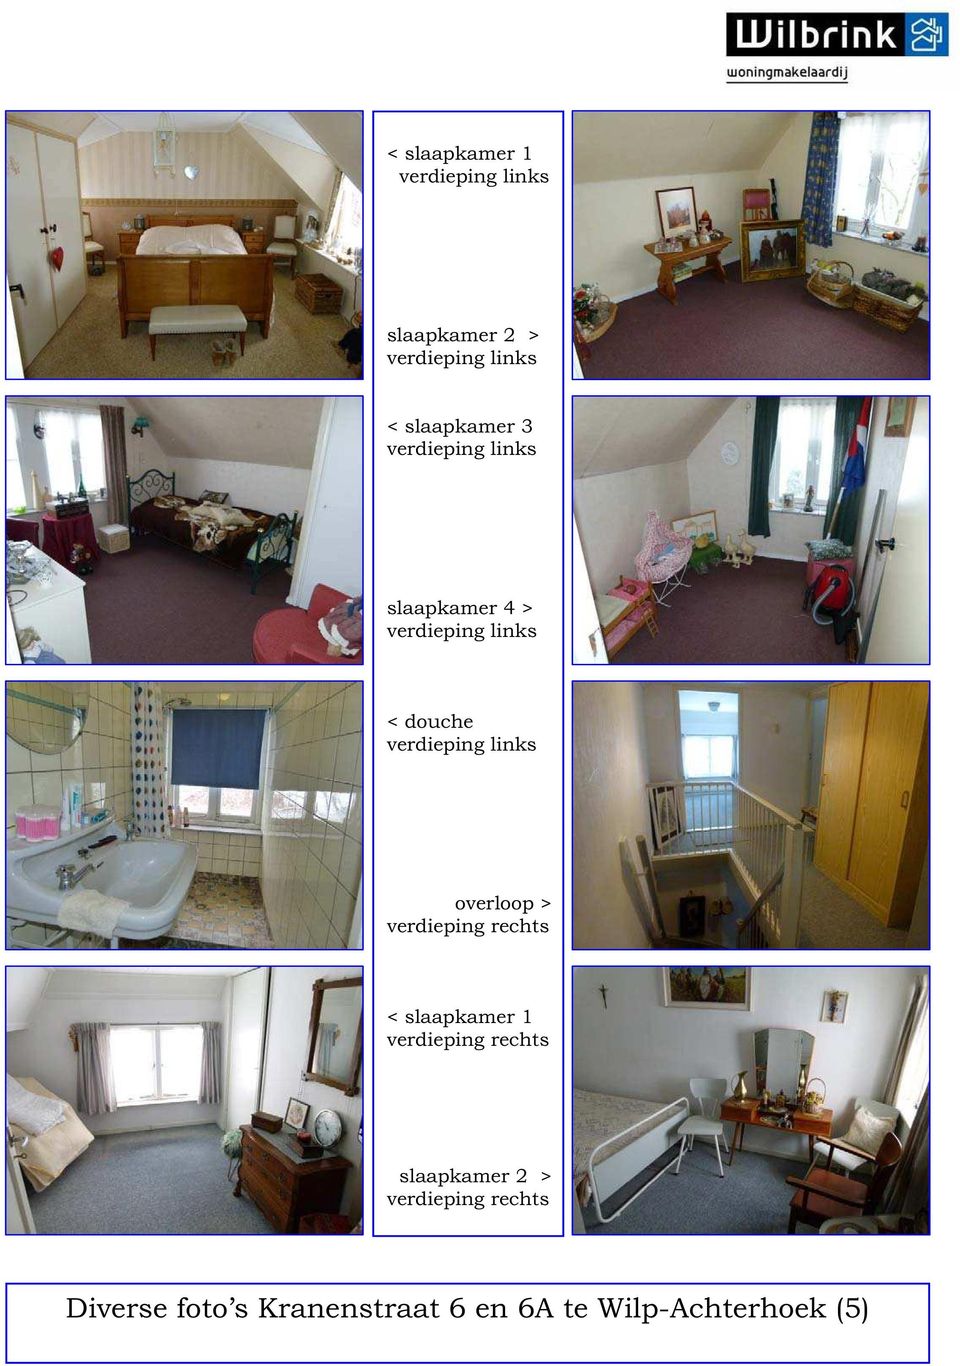 overloop > verdieping rechts < slaapkamer 1 verdieping rechts slaapkamer 2 >